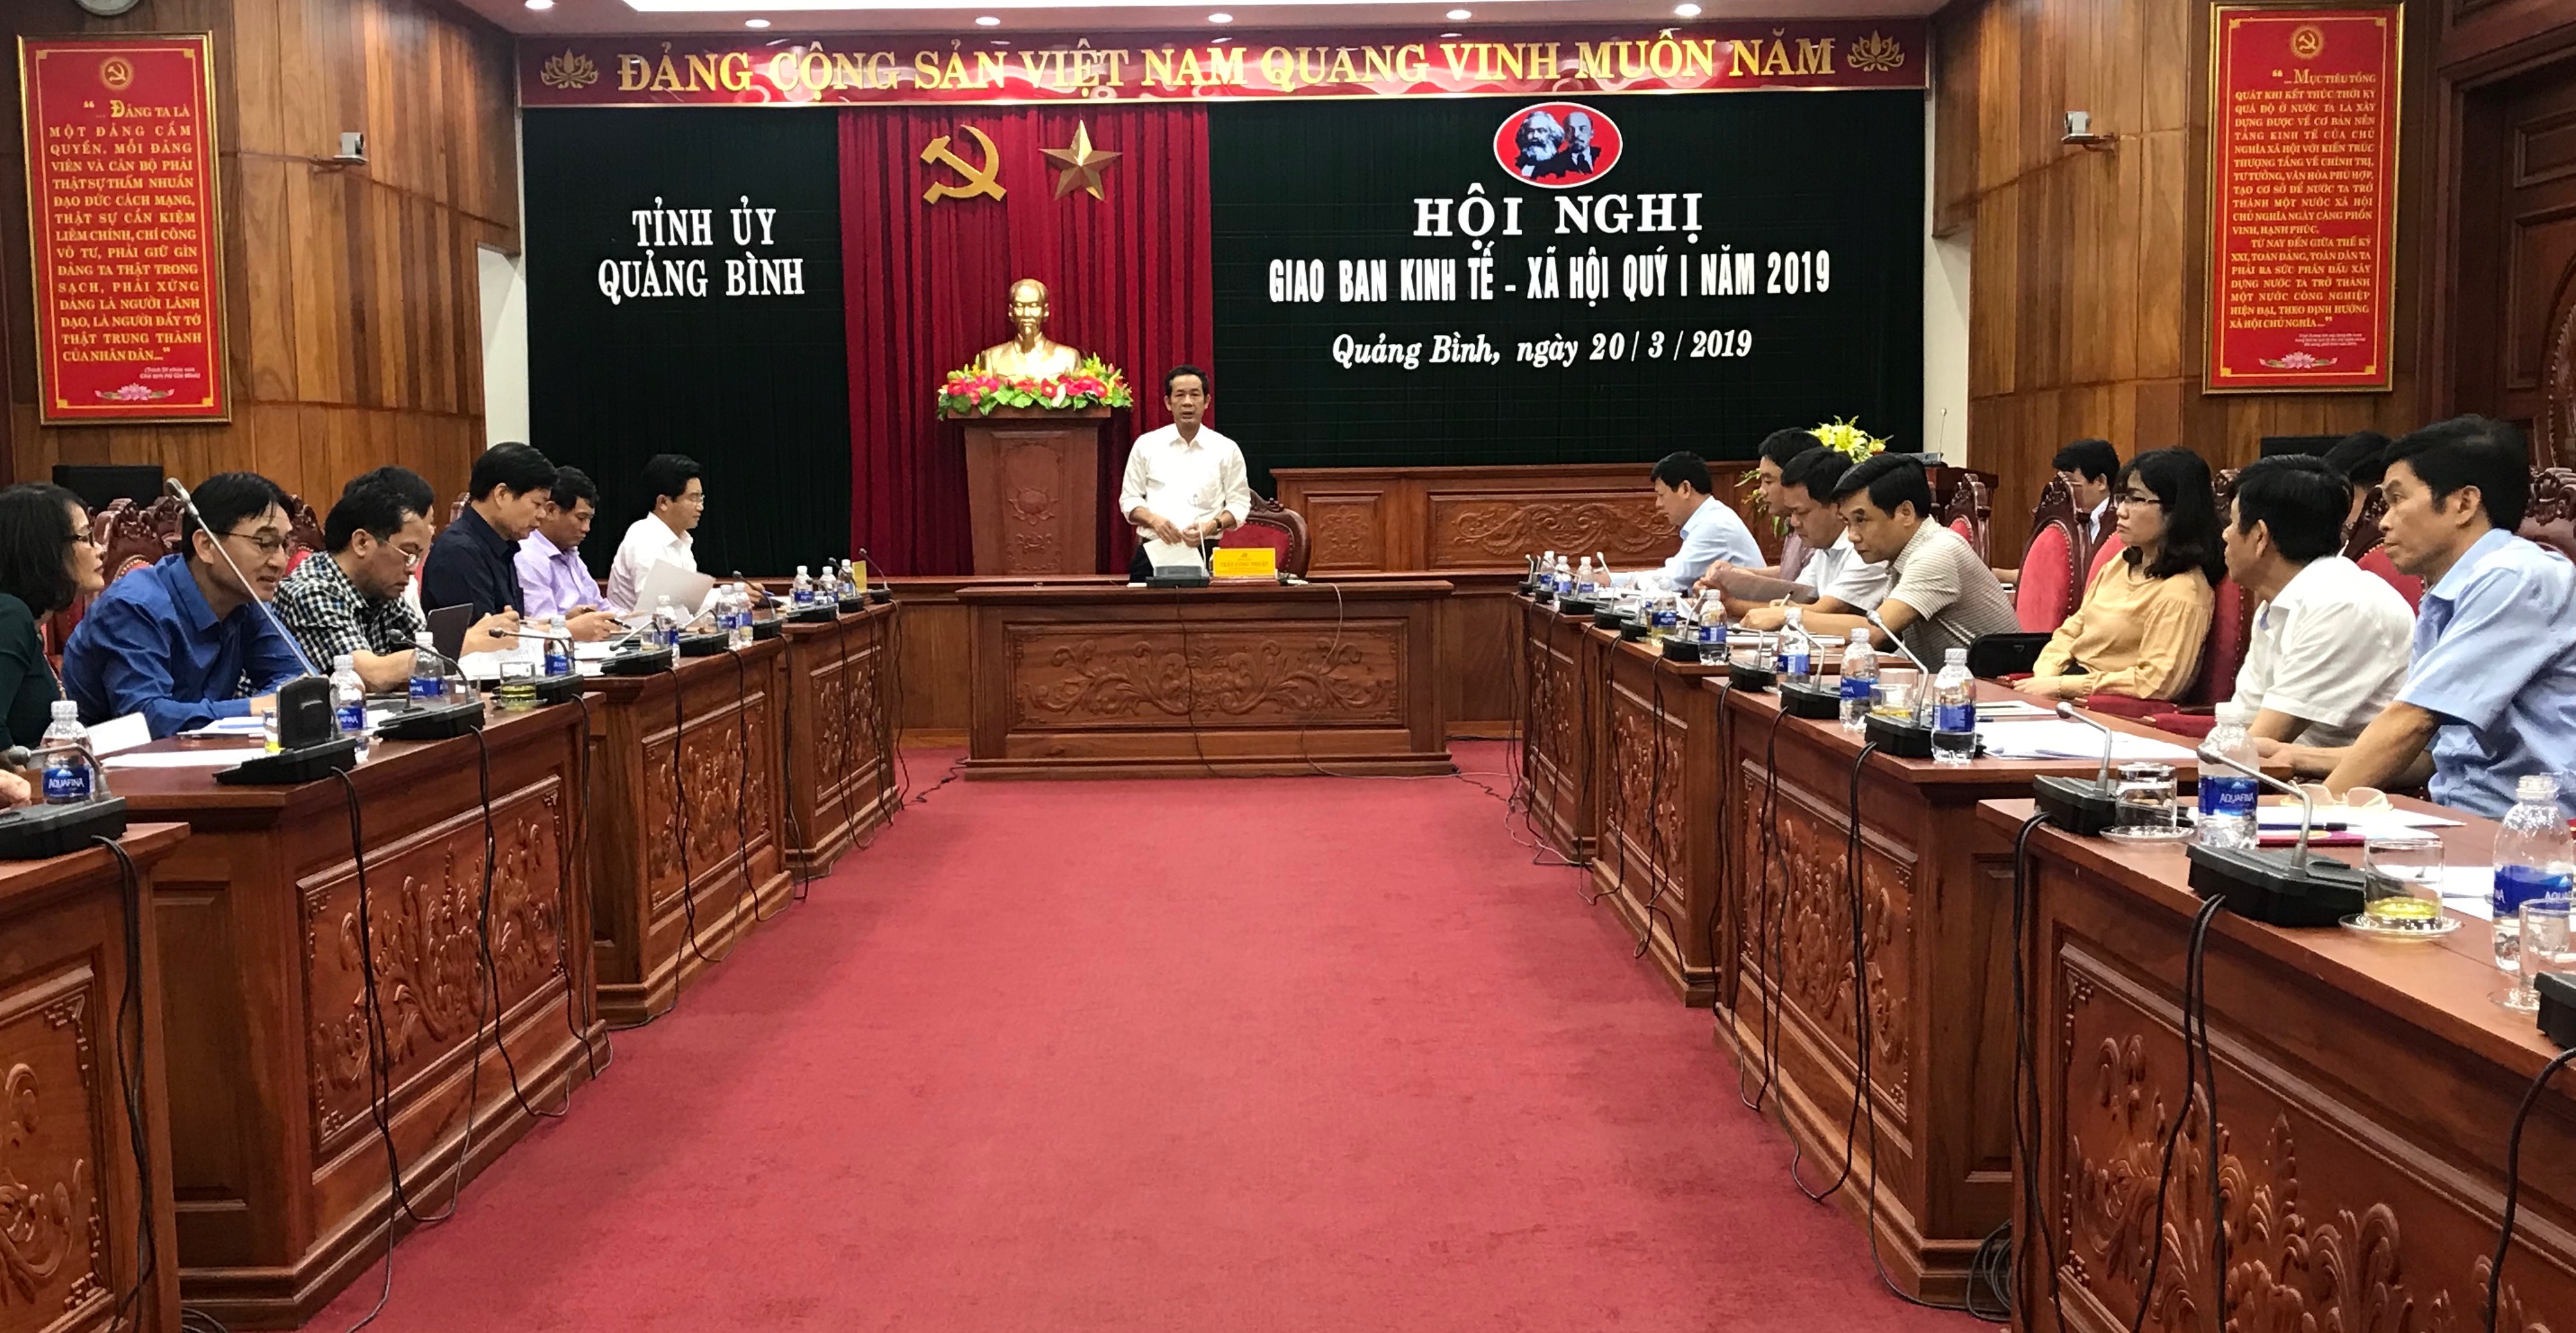 Đồng chí Chủ tịch UBND tỉnh Trần Công Thuật Phát biểu kết luận hội nghị